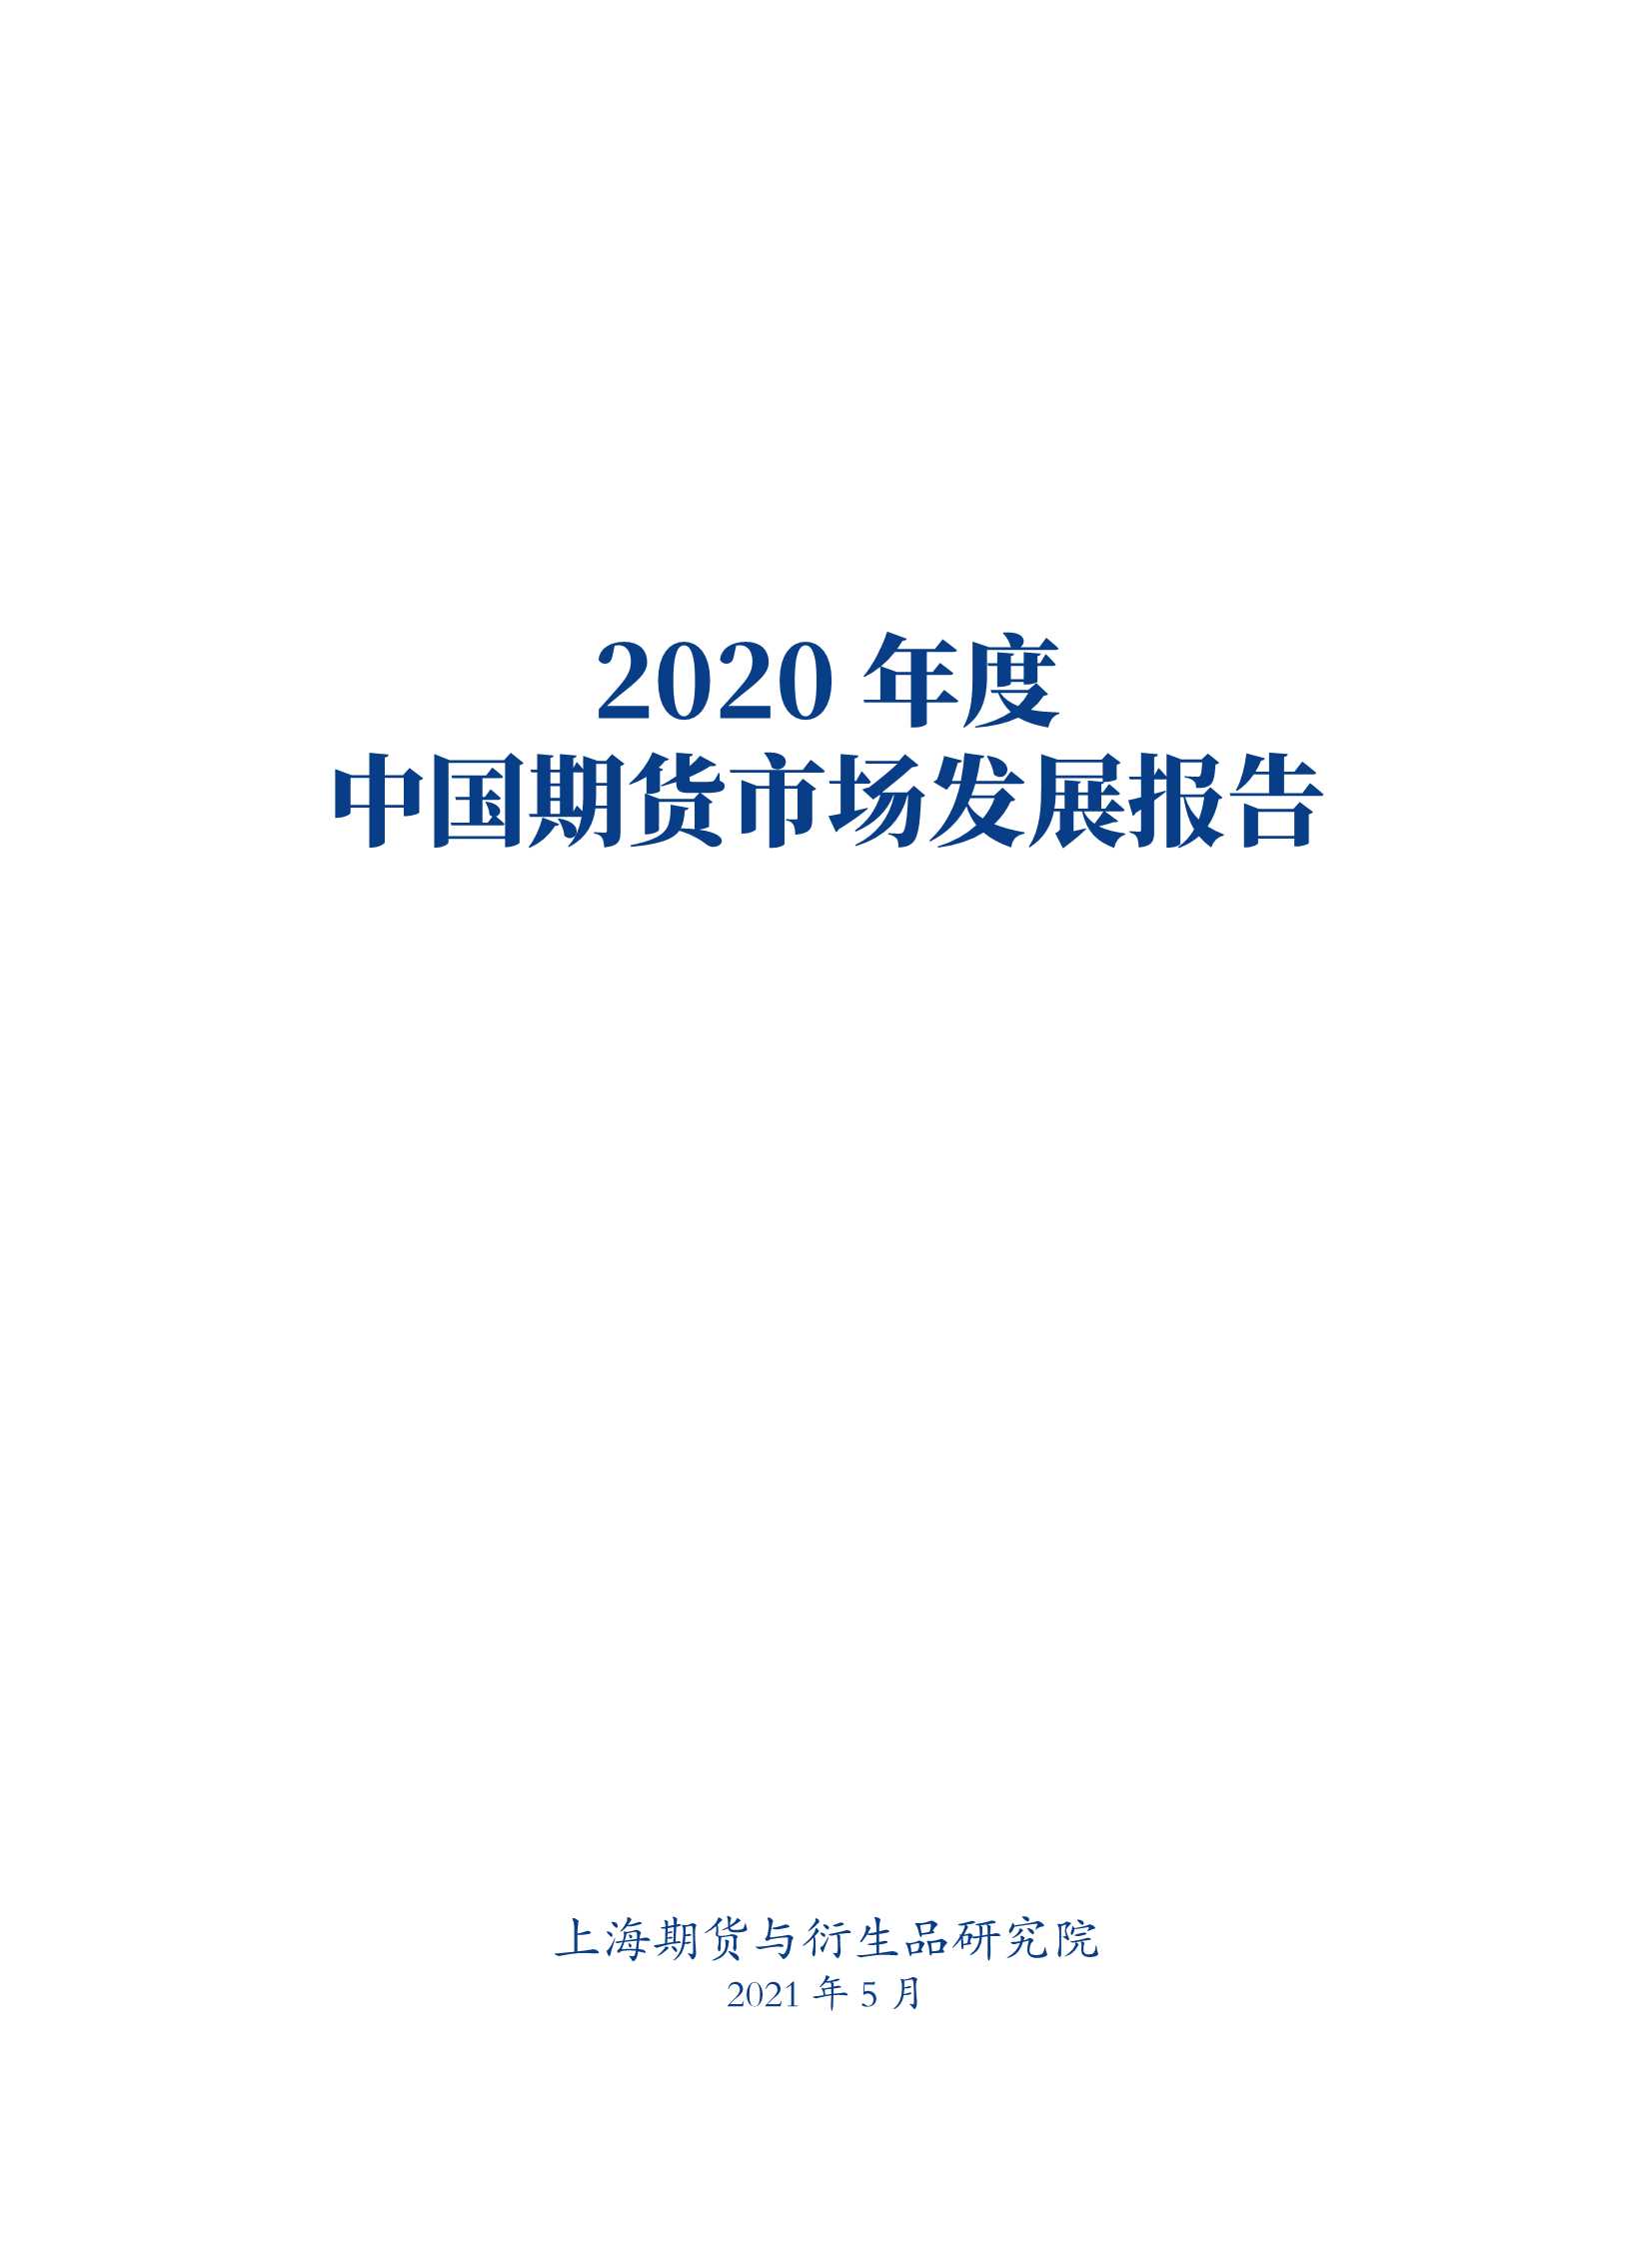 上海期货交易所-2020年度中国期货市场发展报告-2021.05-108页